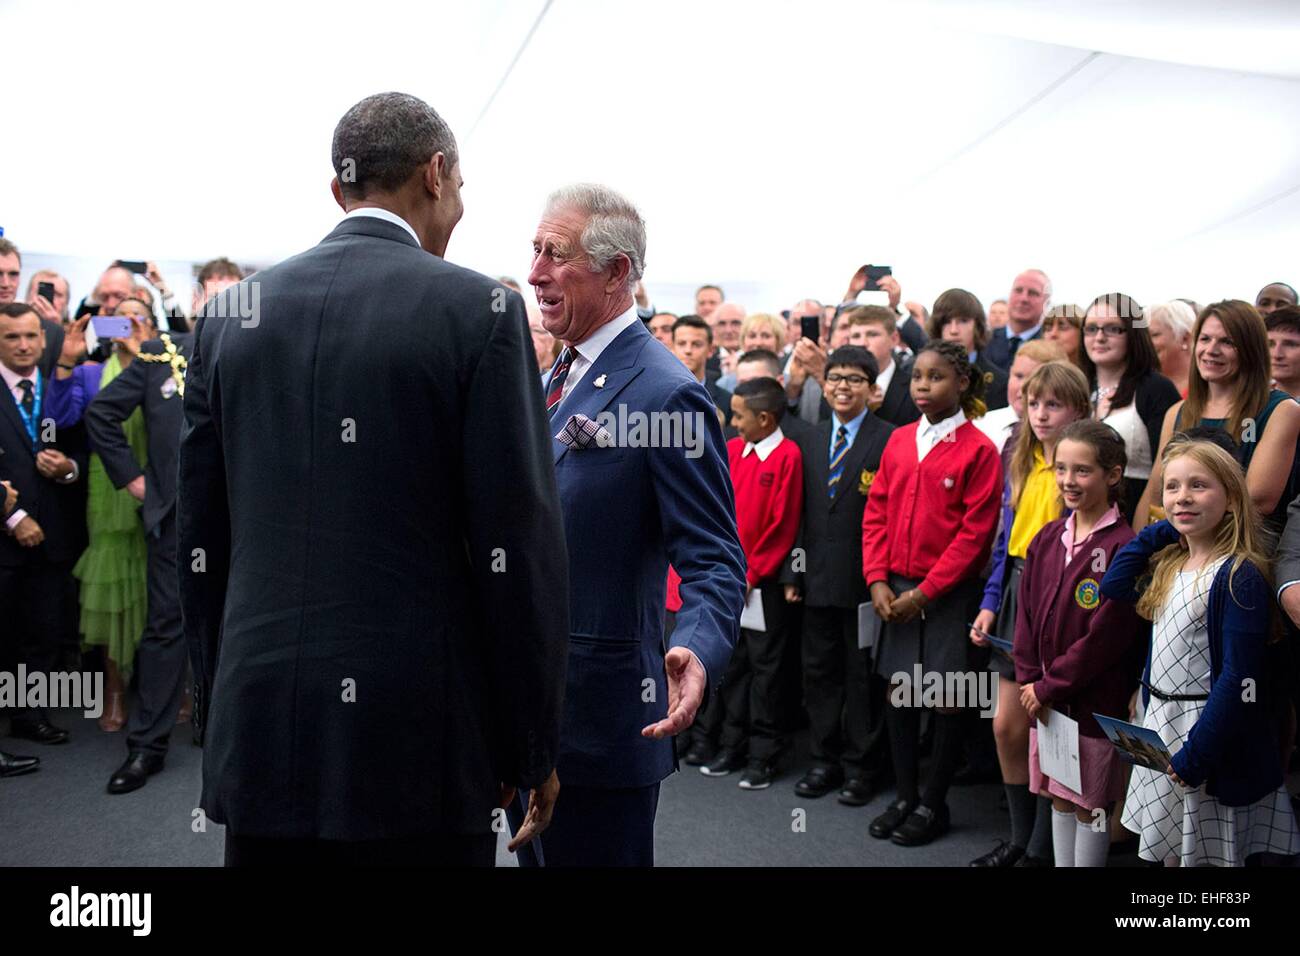 Le président américain Barack Obama participe à une réception organisée par Son Altesse Royale Charles, prince de Galles durant le Sommet de l'OTAN au Celtic Manor Resort, le 4 septembre 2014 à Newport, Pays de Galles. Banque D'Images